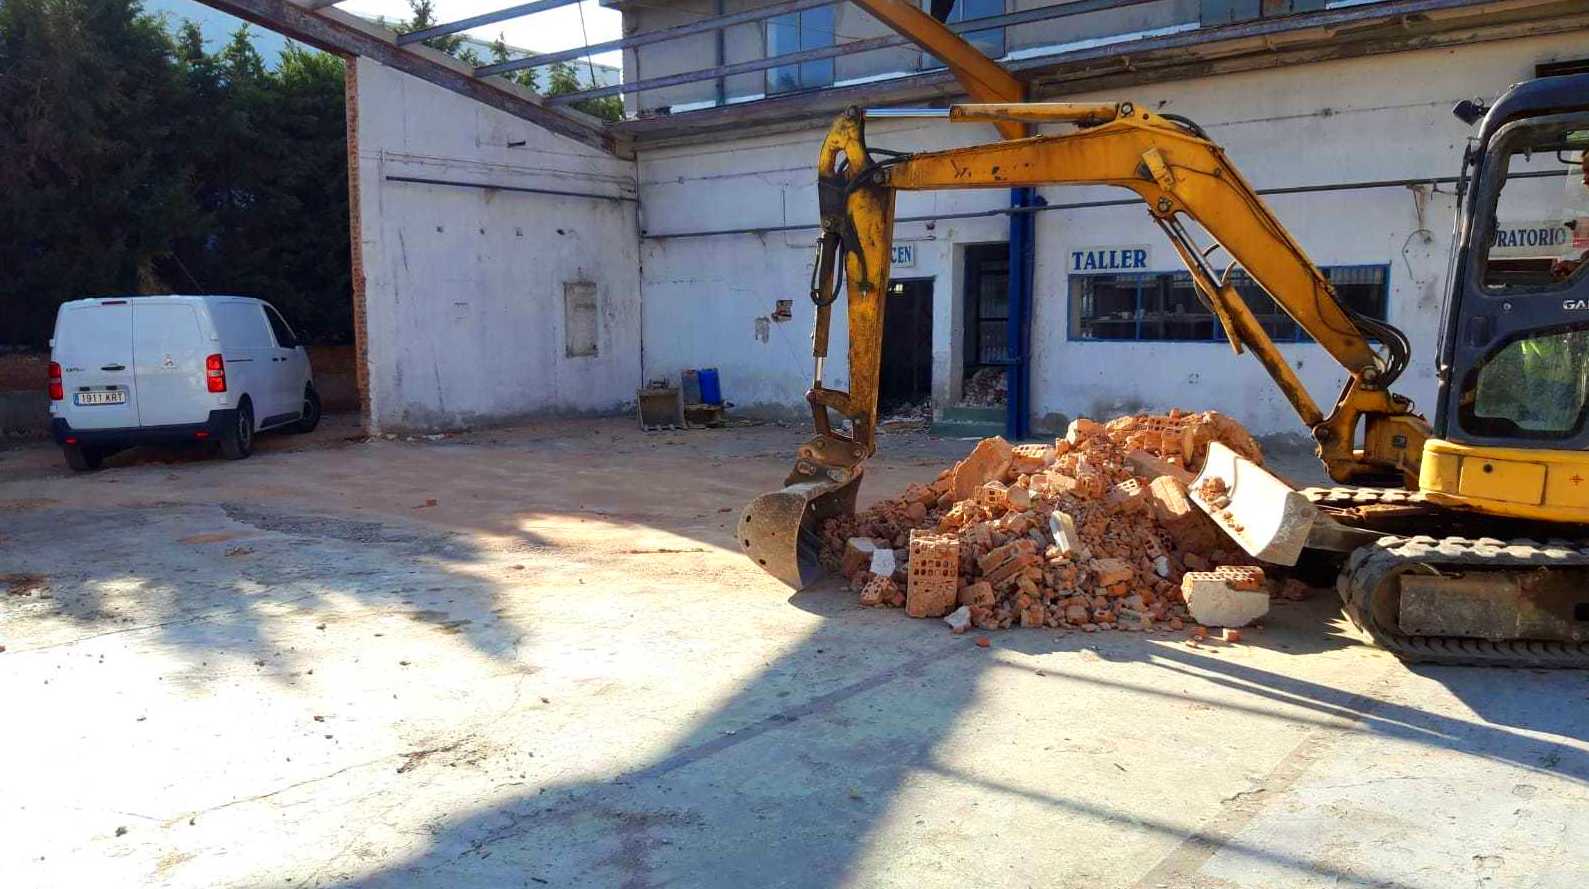 Foto 5 de Excavaciones en Alcorcón | Excavaciones Ragarcap